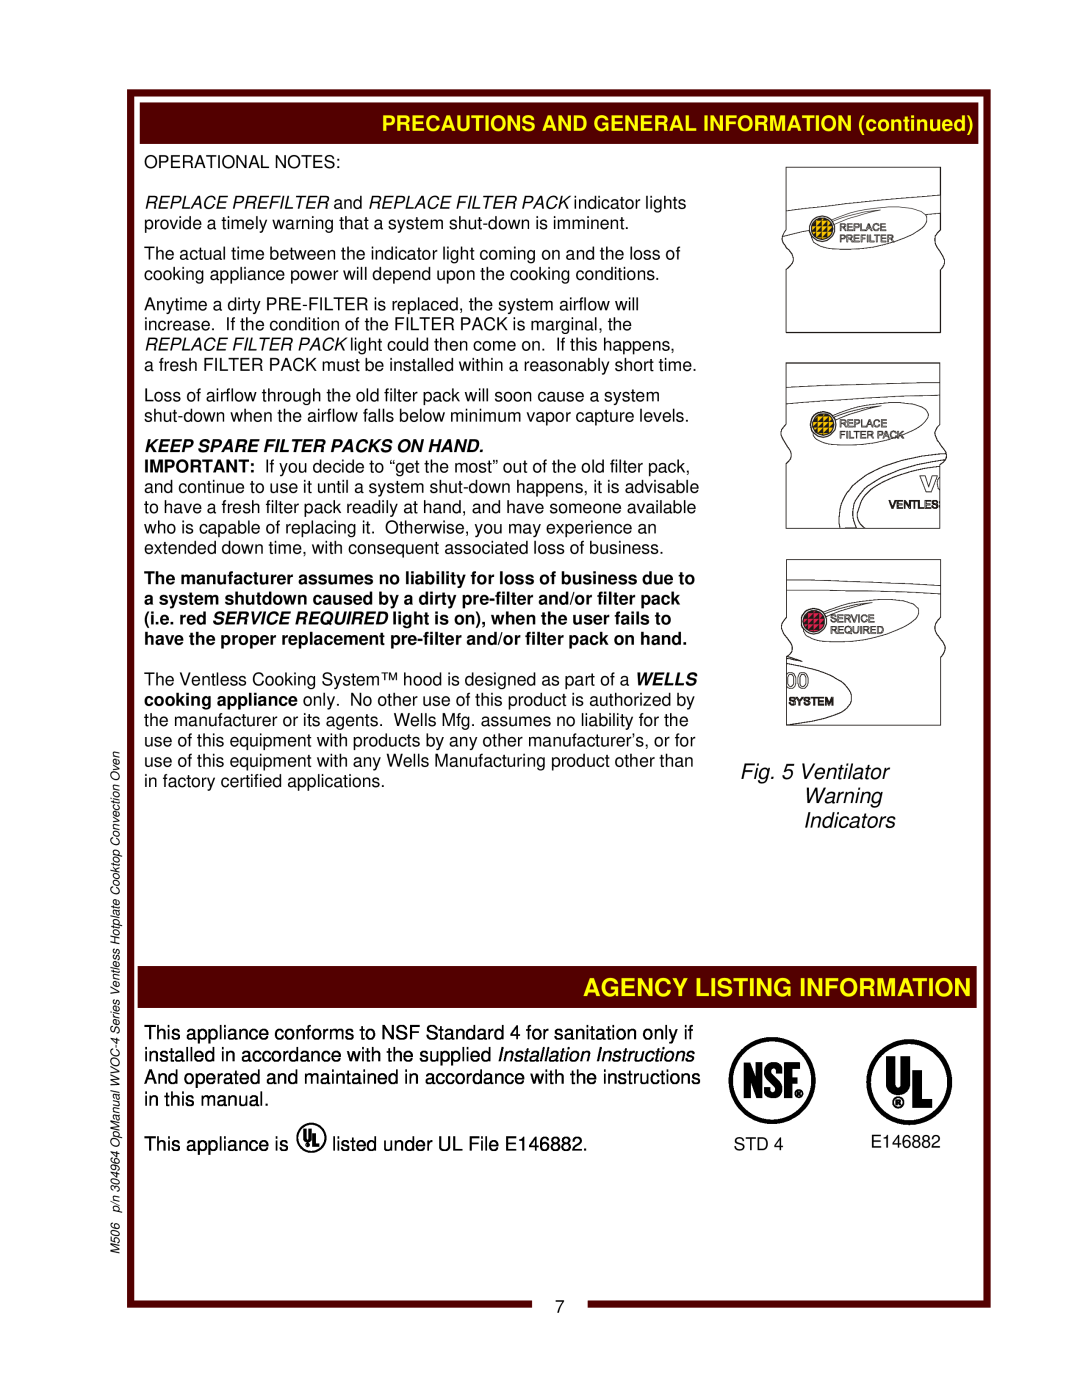 Wells WVOC-4HS operation manual Ventilator, Indicators 